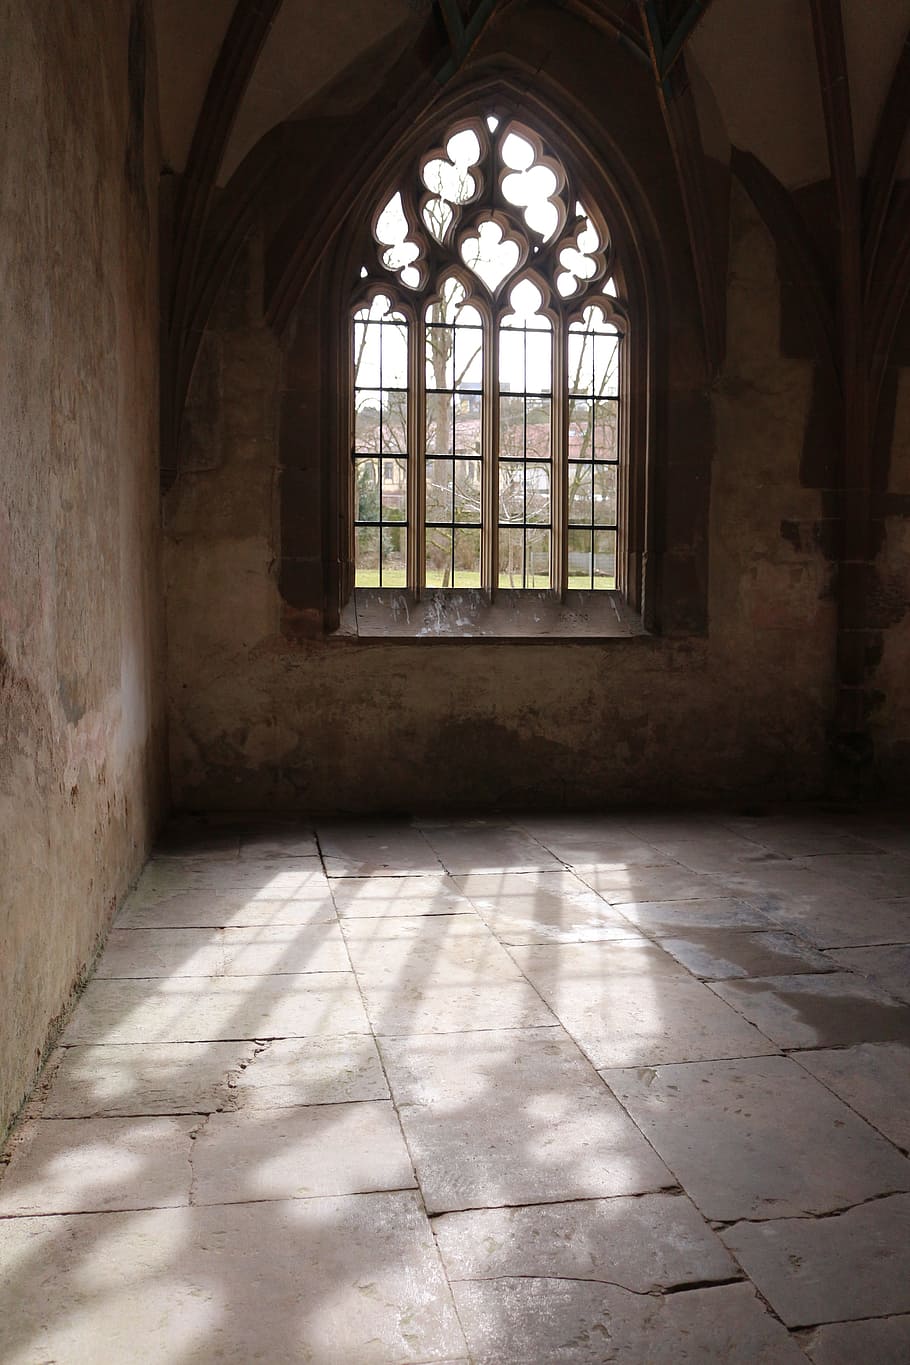 incidencia de luz, ventana, históricamente, antiguo monasterio, abadía de leicester, luz solar, arquitectura, arco, piso, adentro